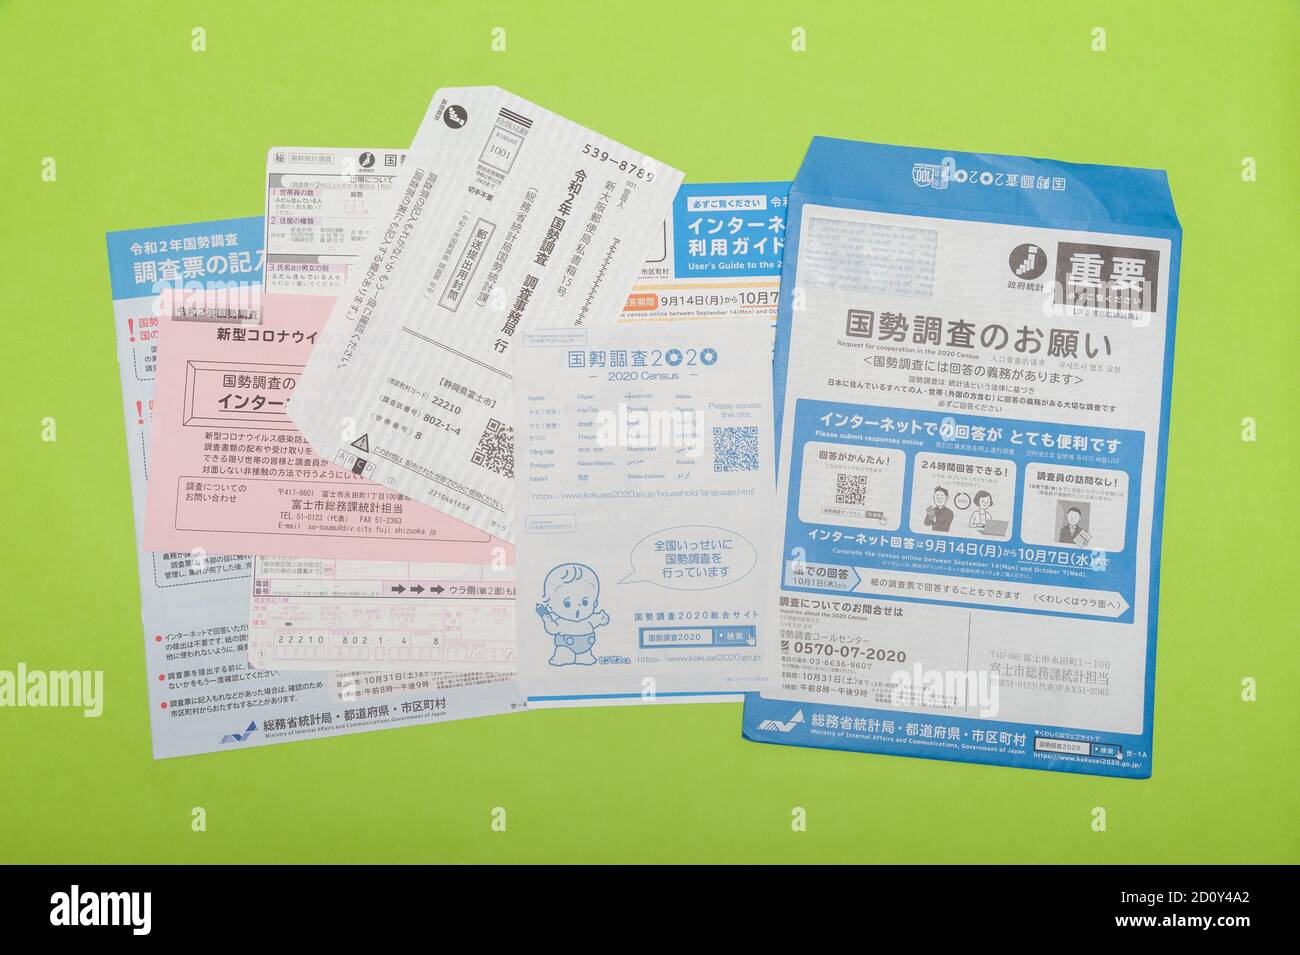 Fuji City, Shizuoka-Ken, Japon - 4 octobre 2020 : questionnaire, formulaires et enveloppes liés au Recensement de 2020 au Japon. Isolé sur fond vert Banque D'Images